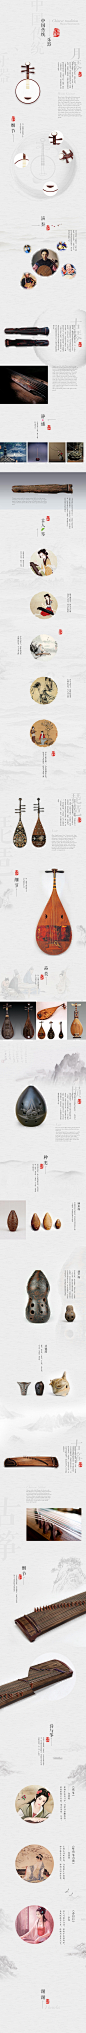 中国传统乐器